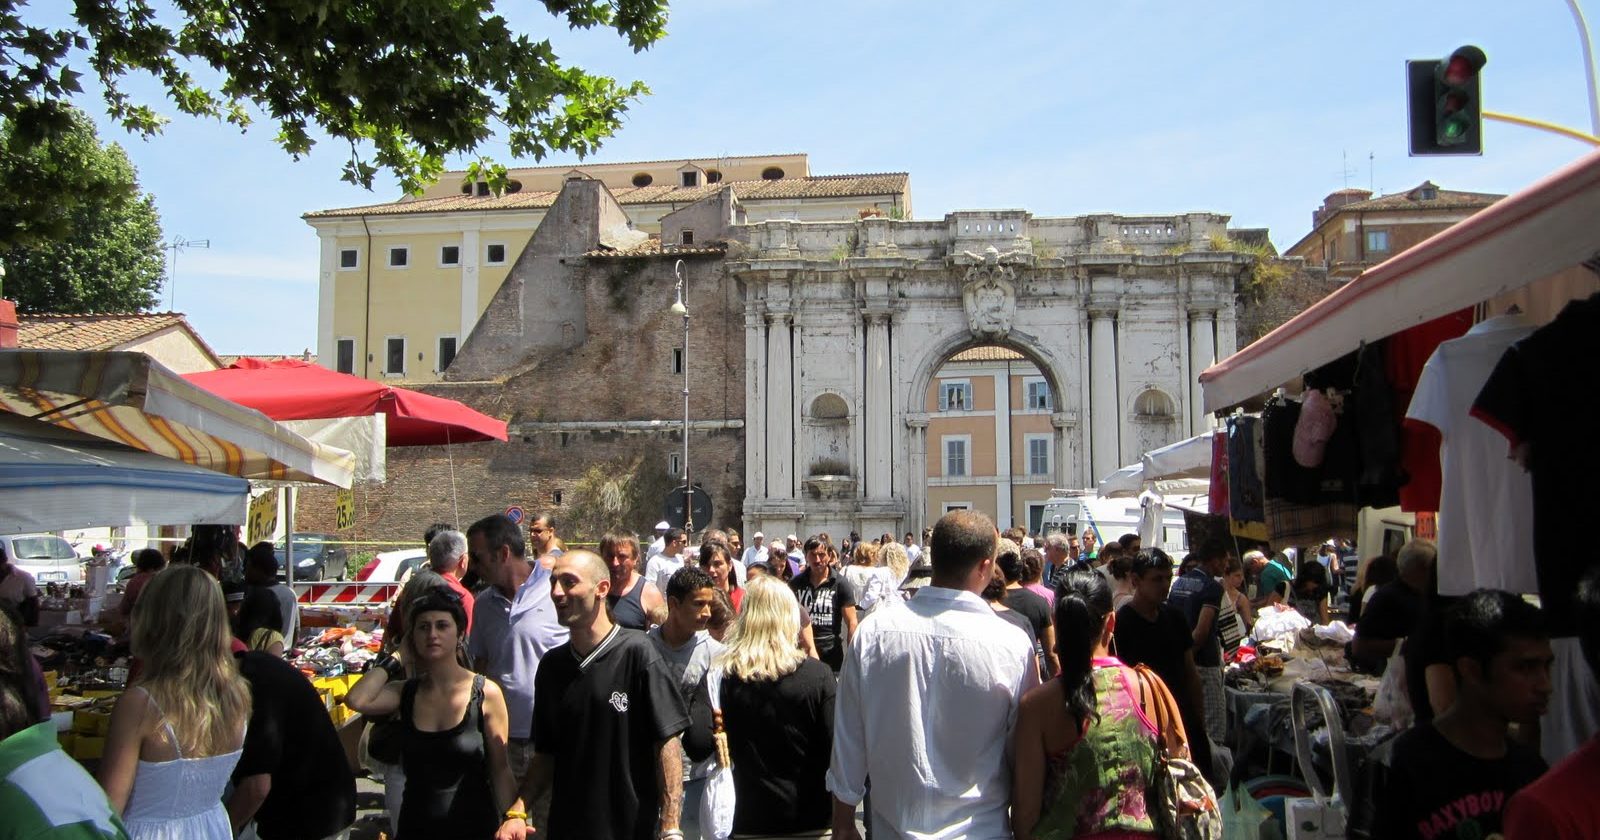 Mercatini di Roma: Porta Portese | #RomaCreArtigiana - web portal